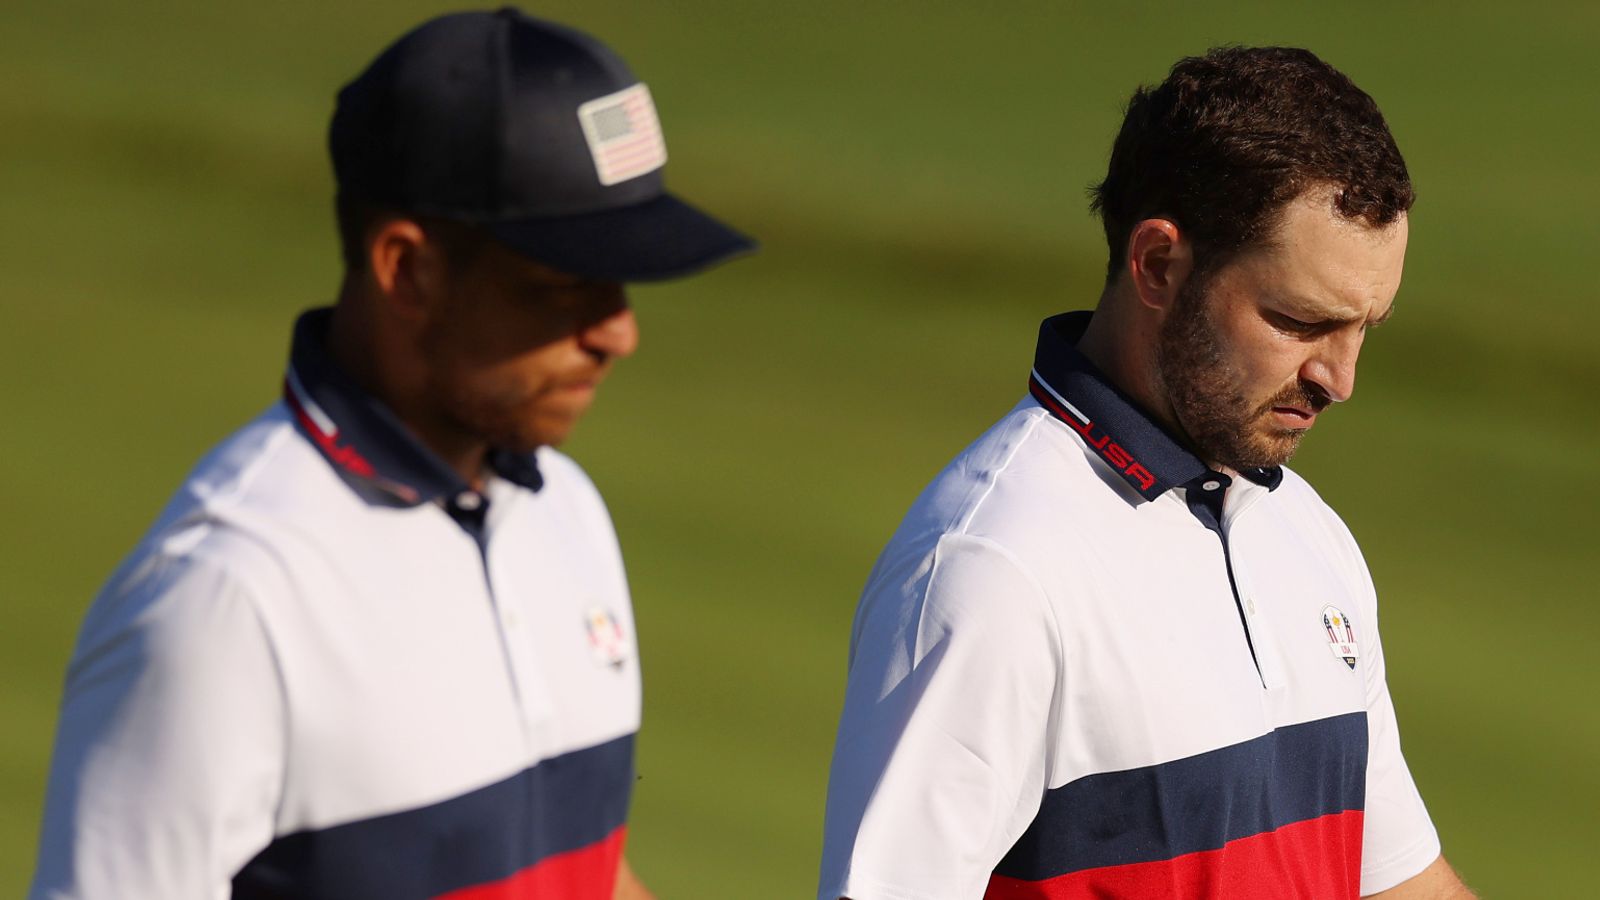 Ryder Cup: Team USA zerbricht, als Patrick Cantlay fordert, dass die Spieler für ihre Auftritte in Rom bezahlt werden |  Golfnachrichten